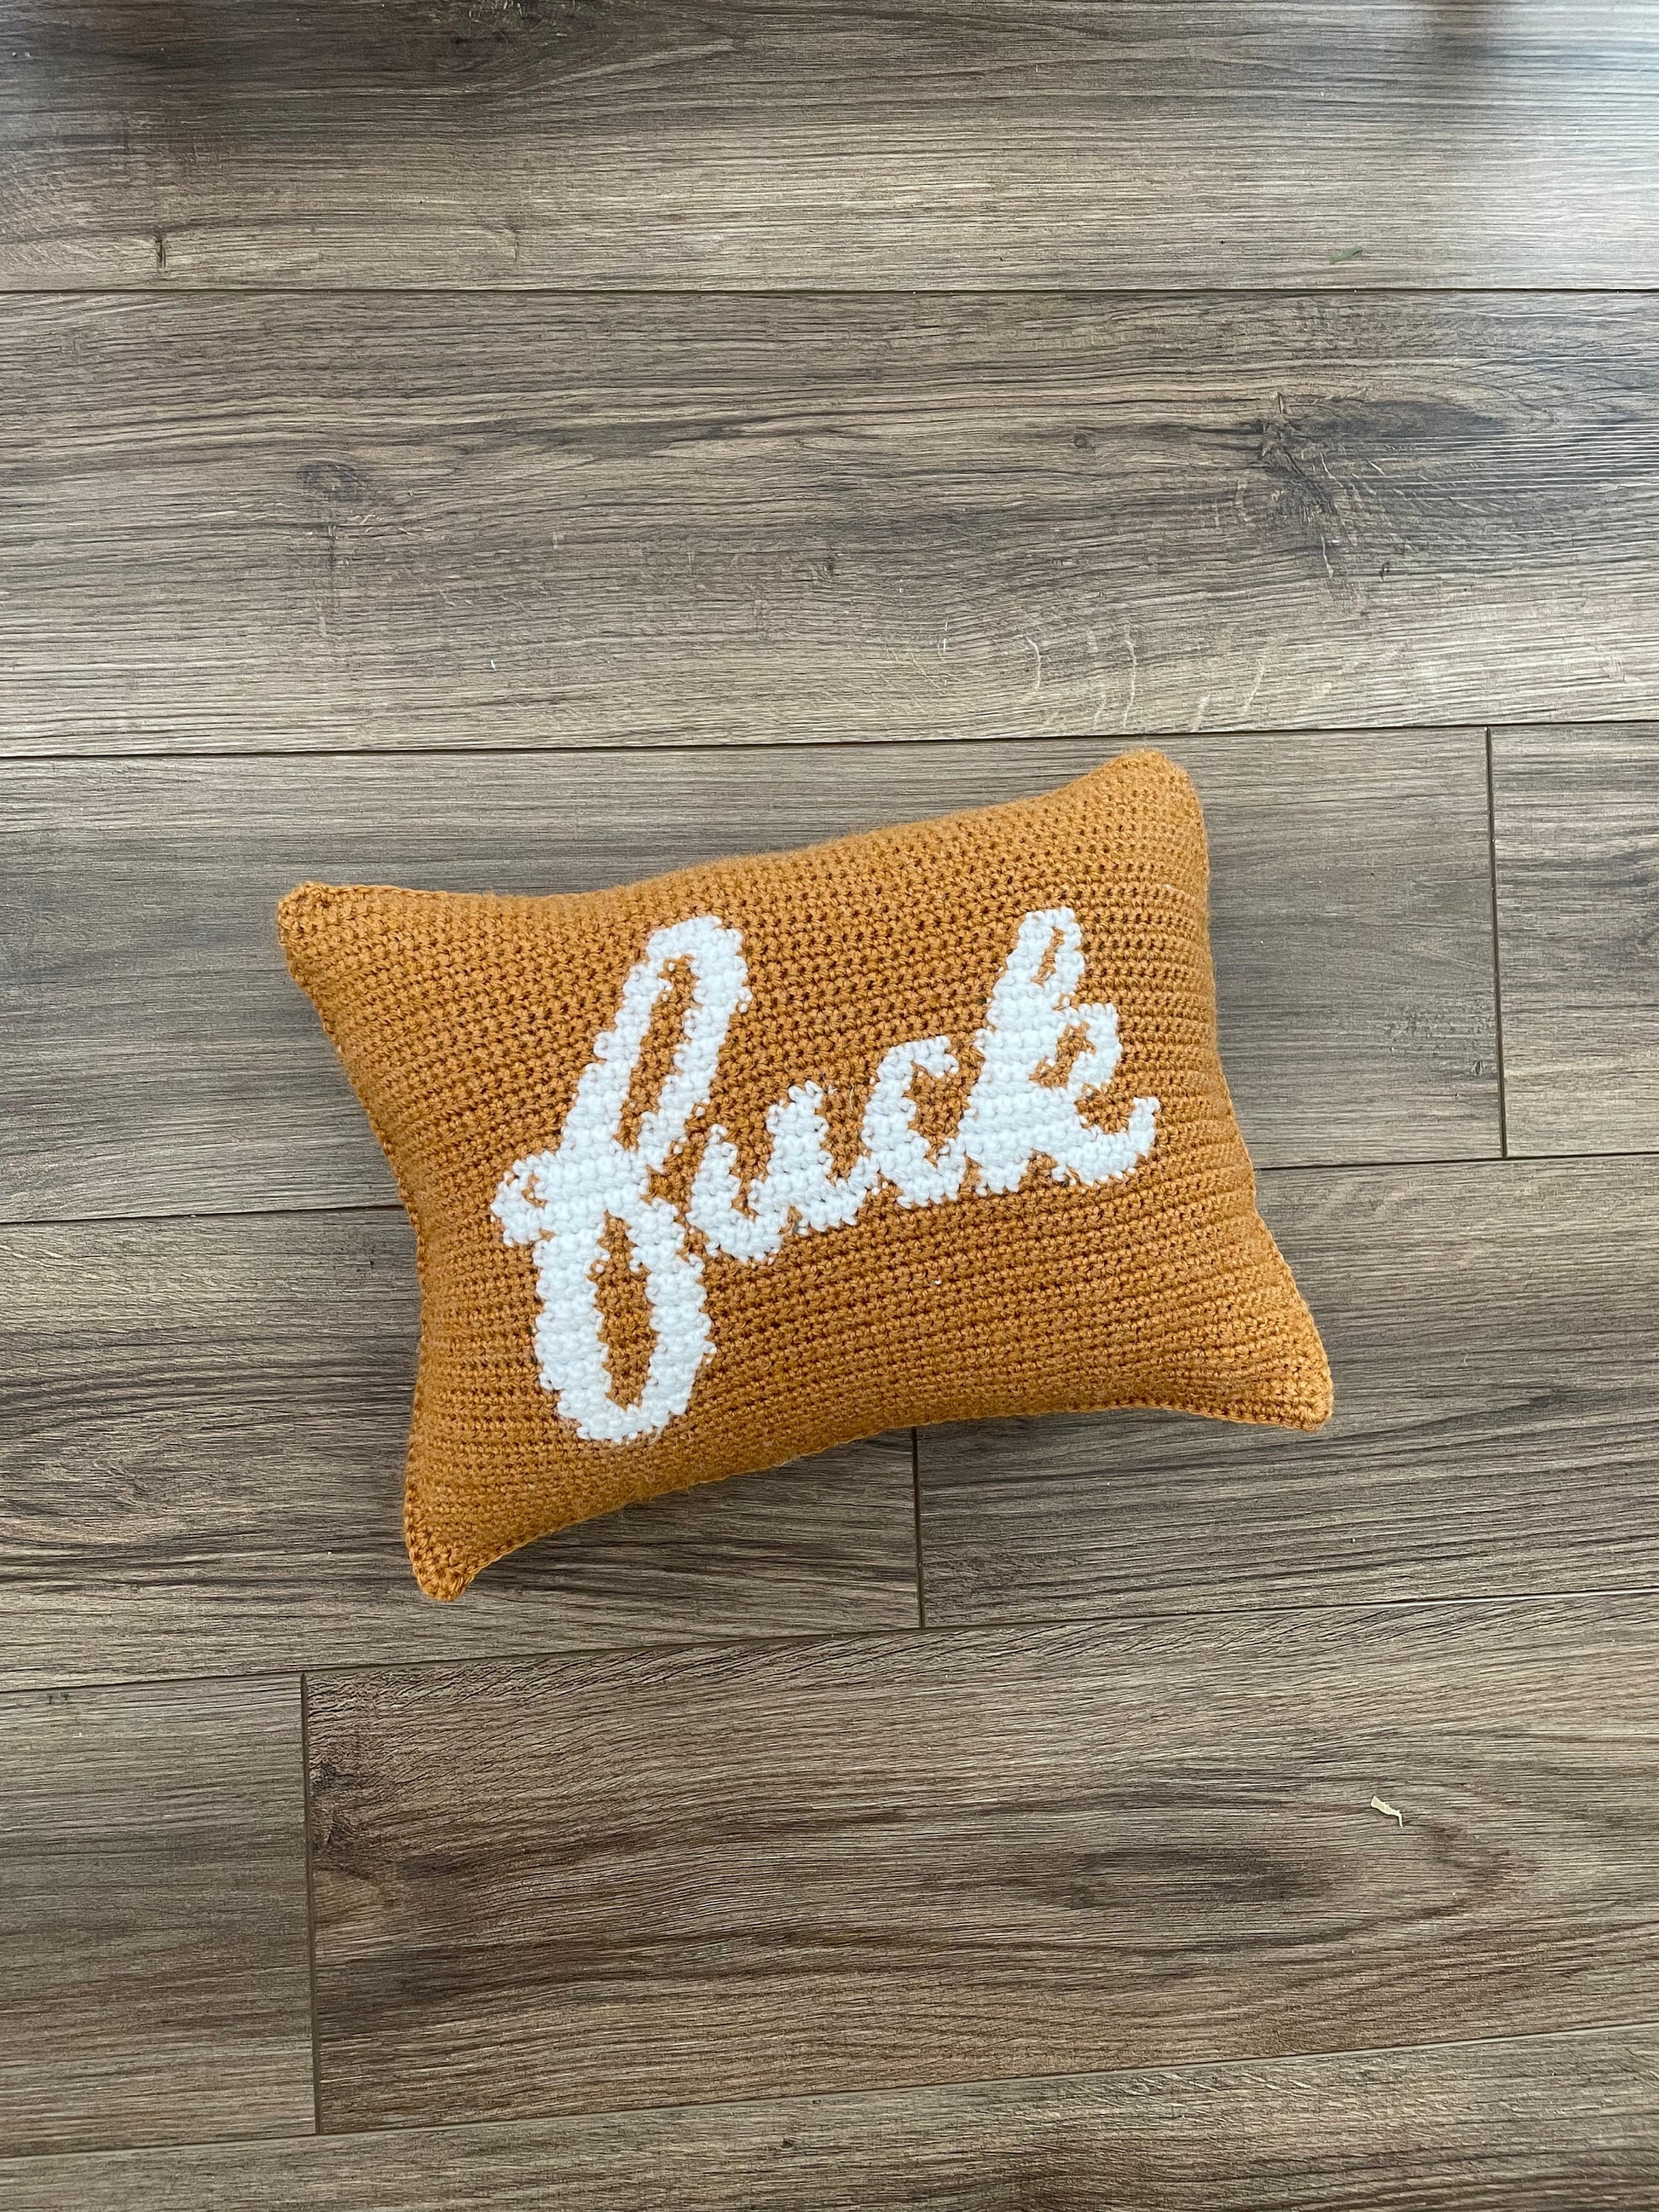 CROCHET PATTERN- Fuck Pillow, Fuck Colorwork Pillow, Crochet Pillow, Curse Word Pillow